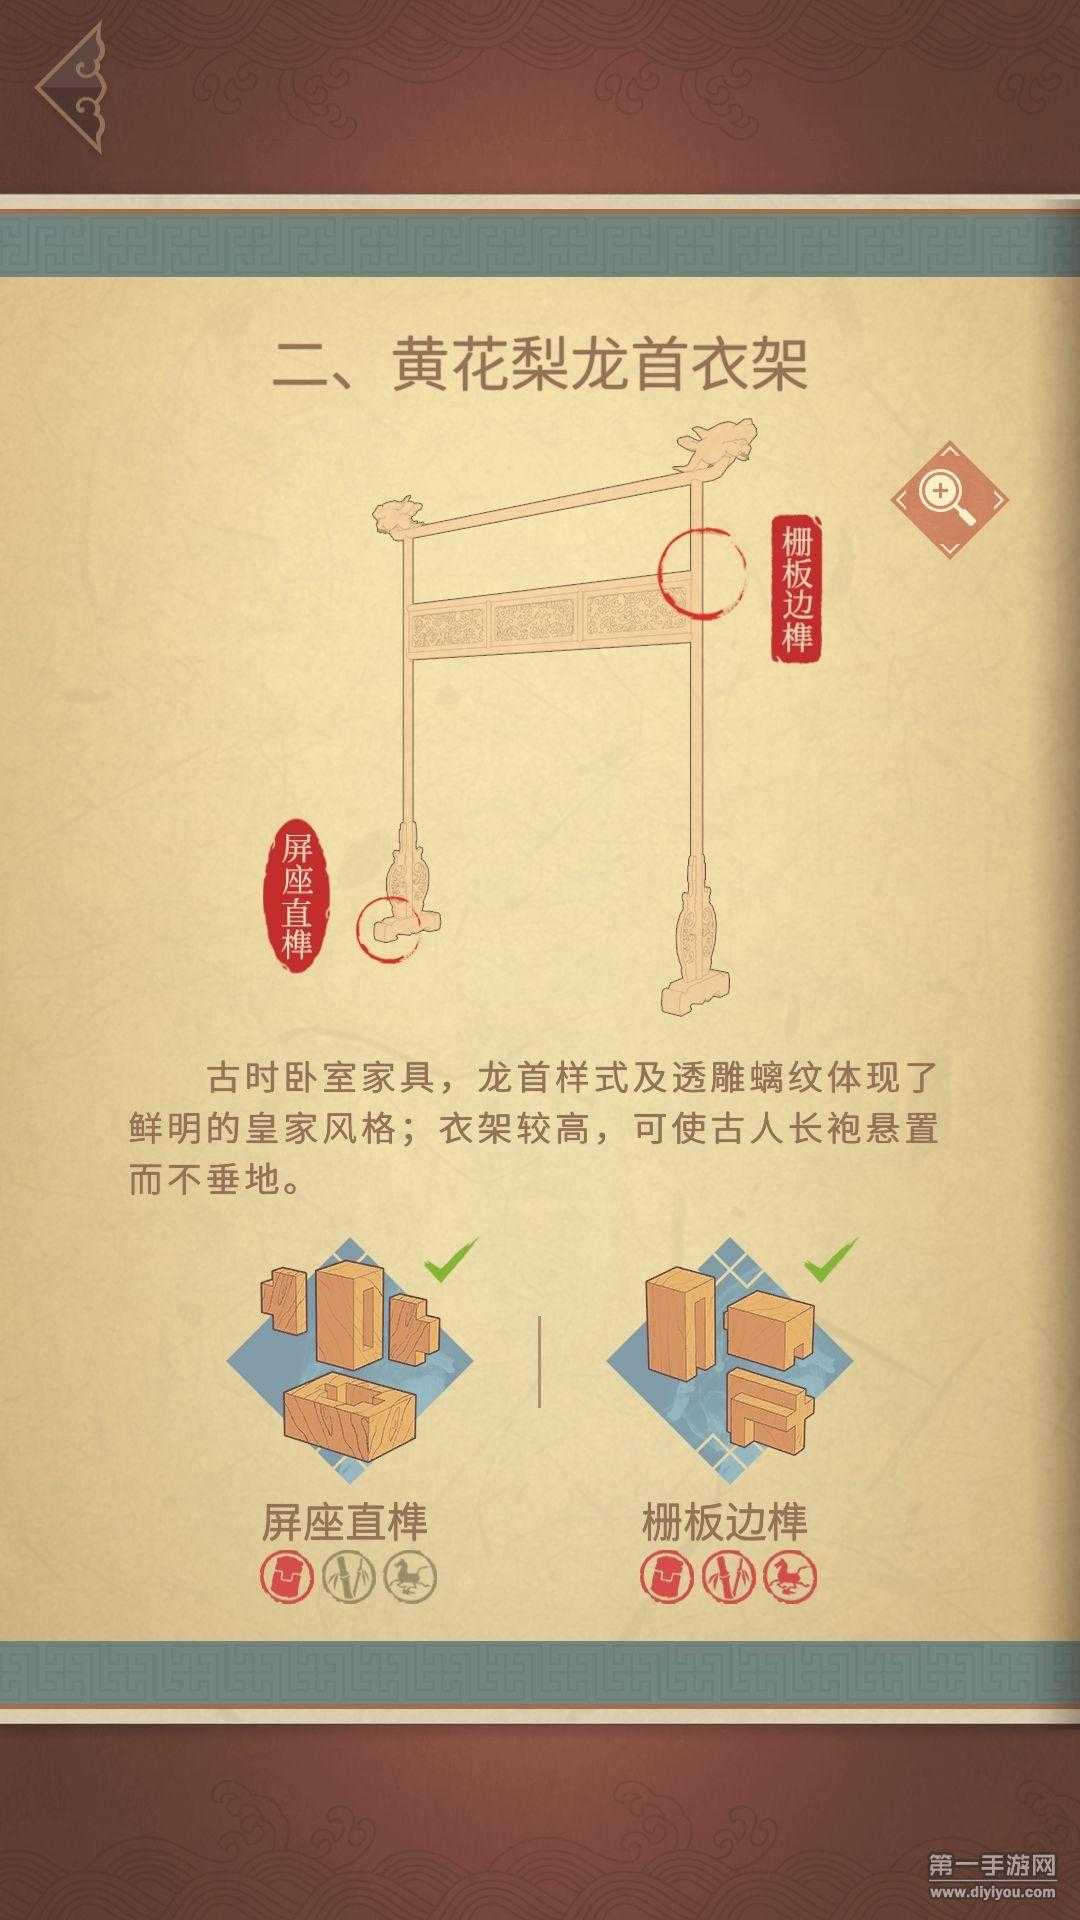 匠木试玩：寓教于乐！从榫卯技术中传承中国传统文化